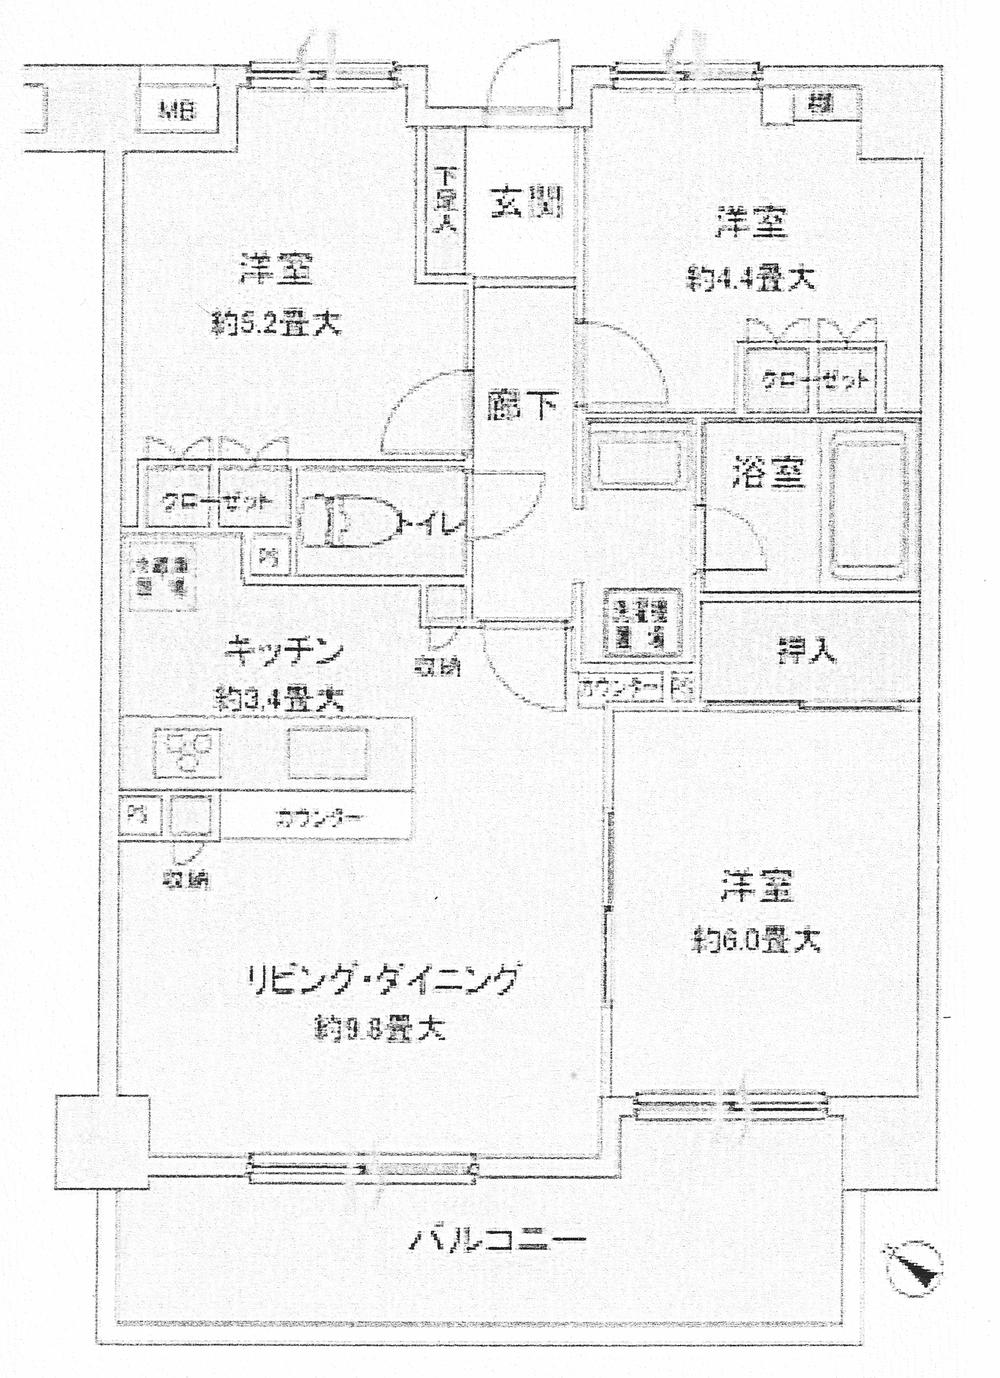 Floor plan. 3LDK, Price 24,900,000 yen, Occupied area 63.61 sq m , Balcony area 10.65 sq m indoor (November 2013) Shooting